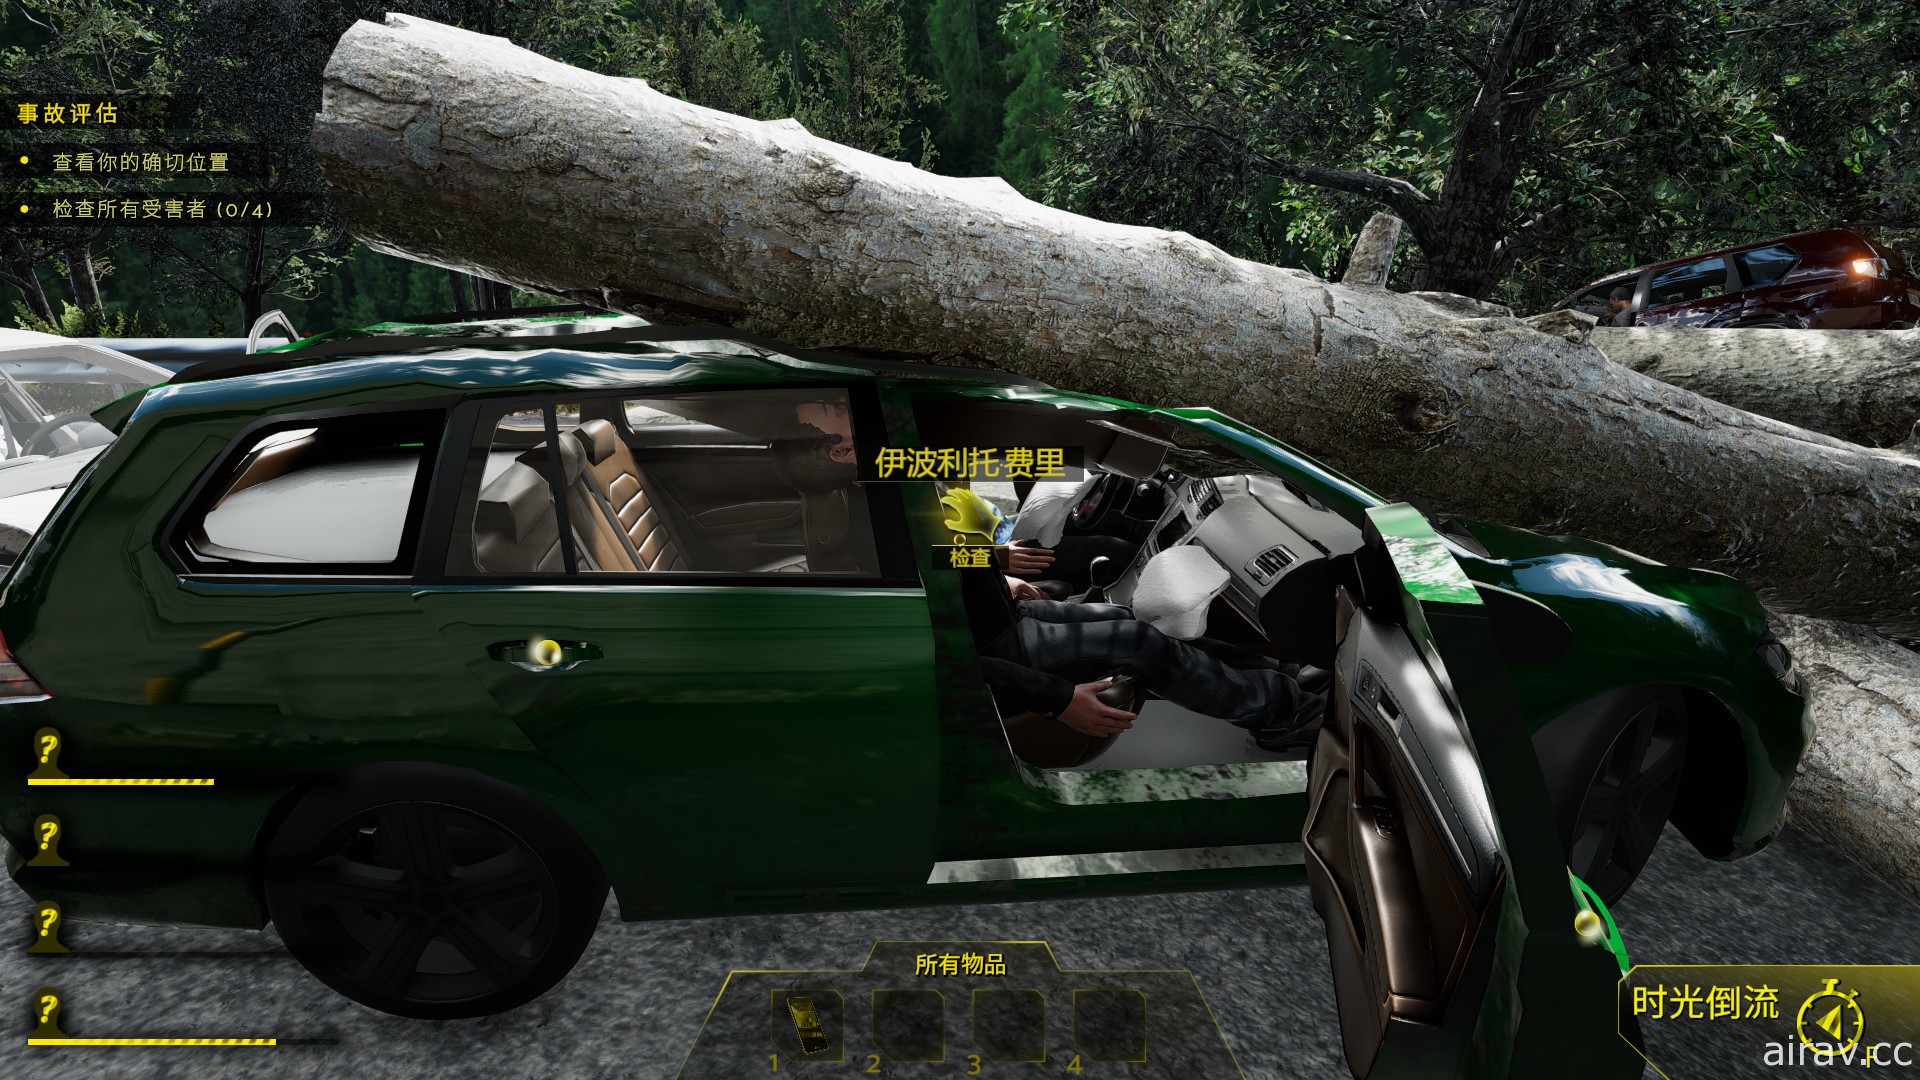 獨立遊戲新作《模擬車禍現場 Accident》展開搶先體驗 救出傷患同時找事故原因